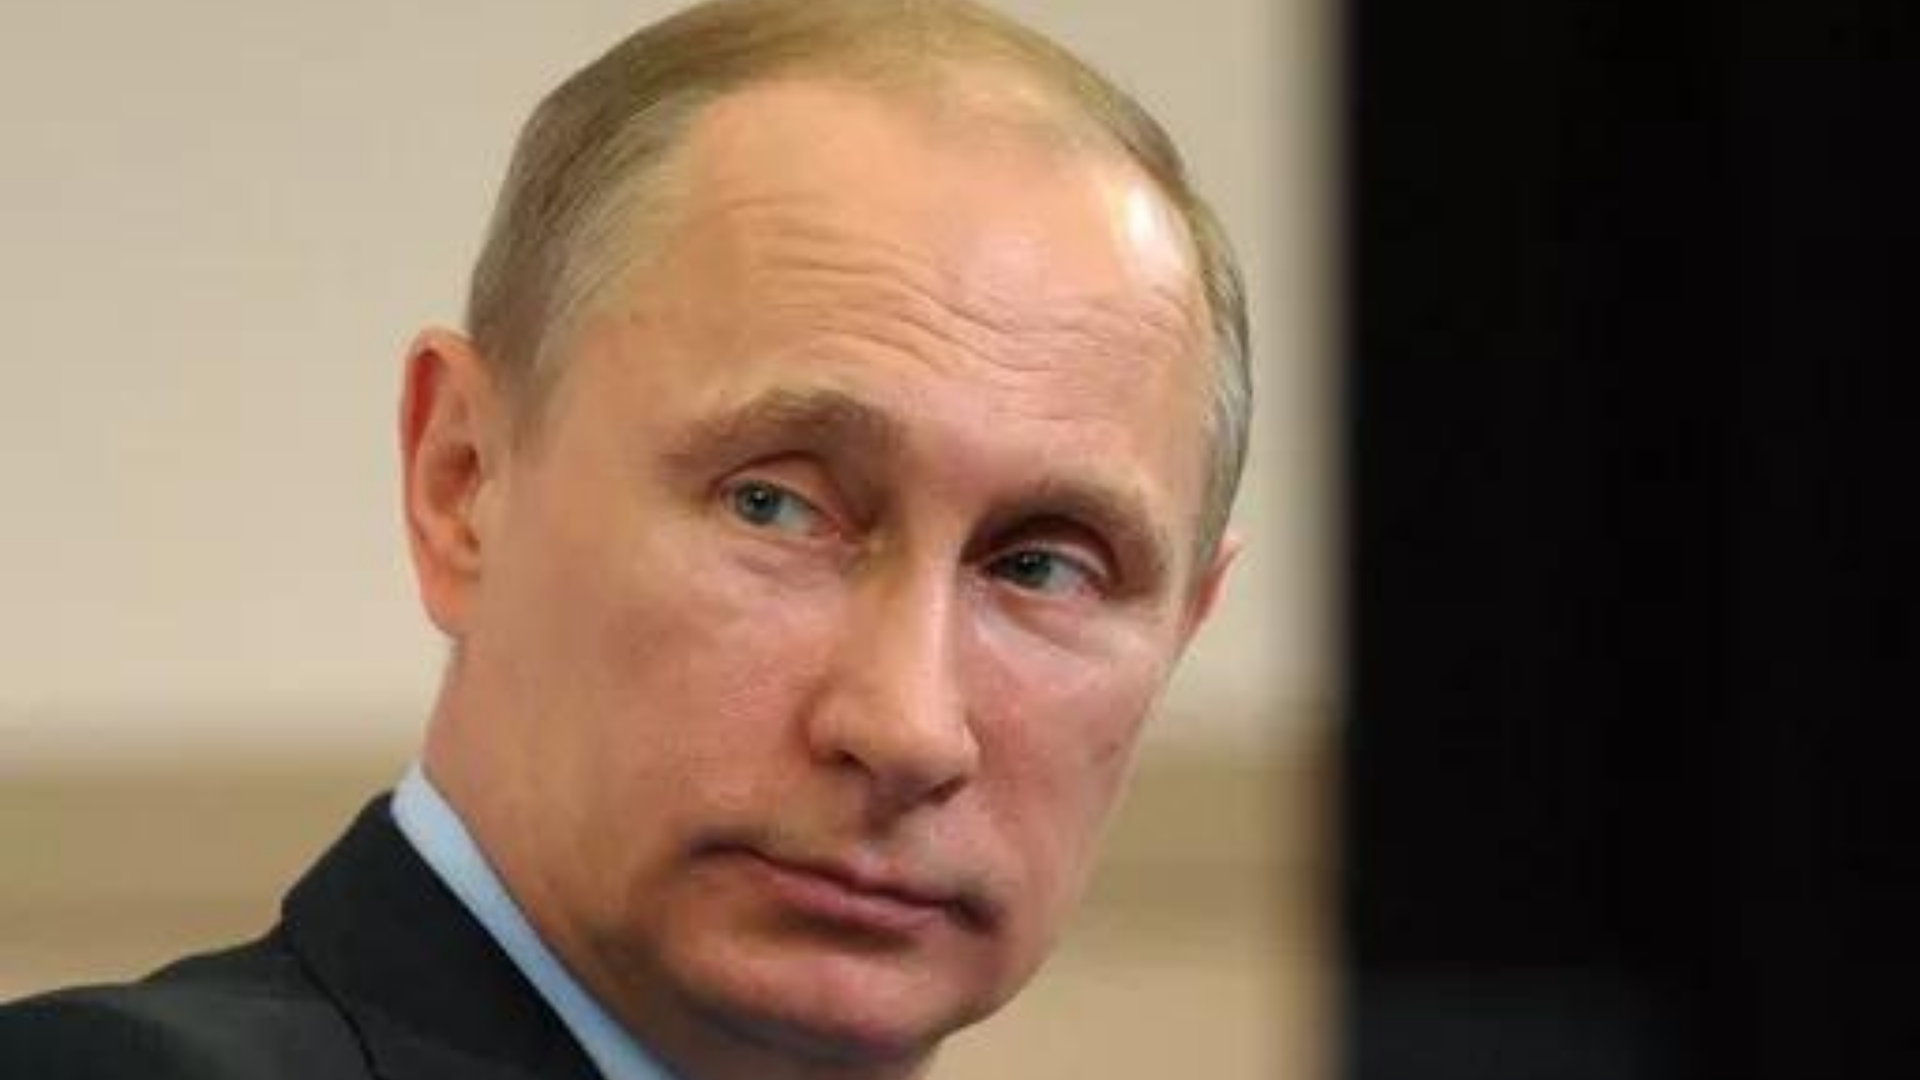 Magnatas russos e aliados de Putin têm ativos congelados. Foto do presidente com expressão séria. 